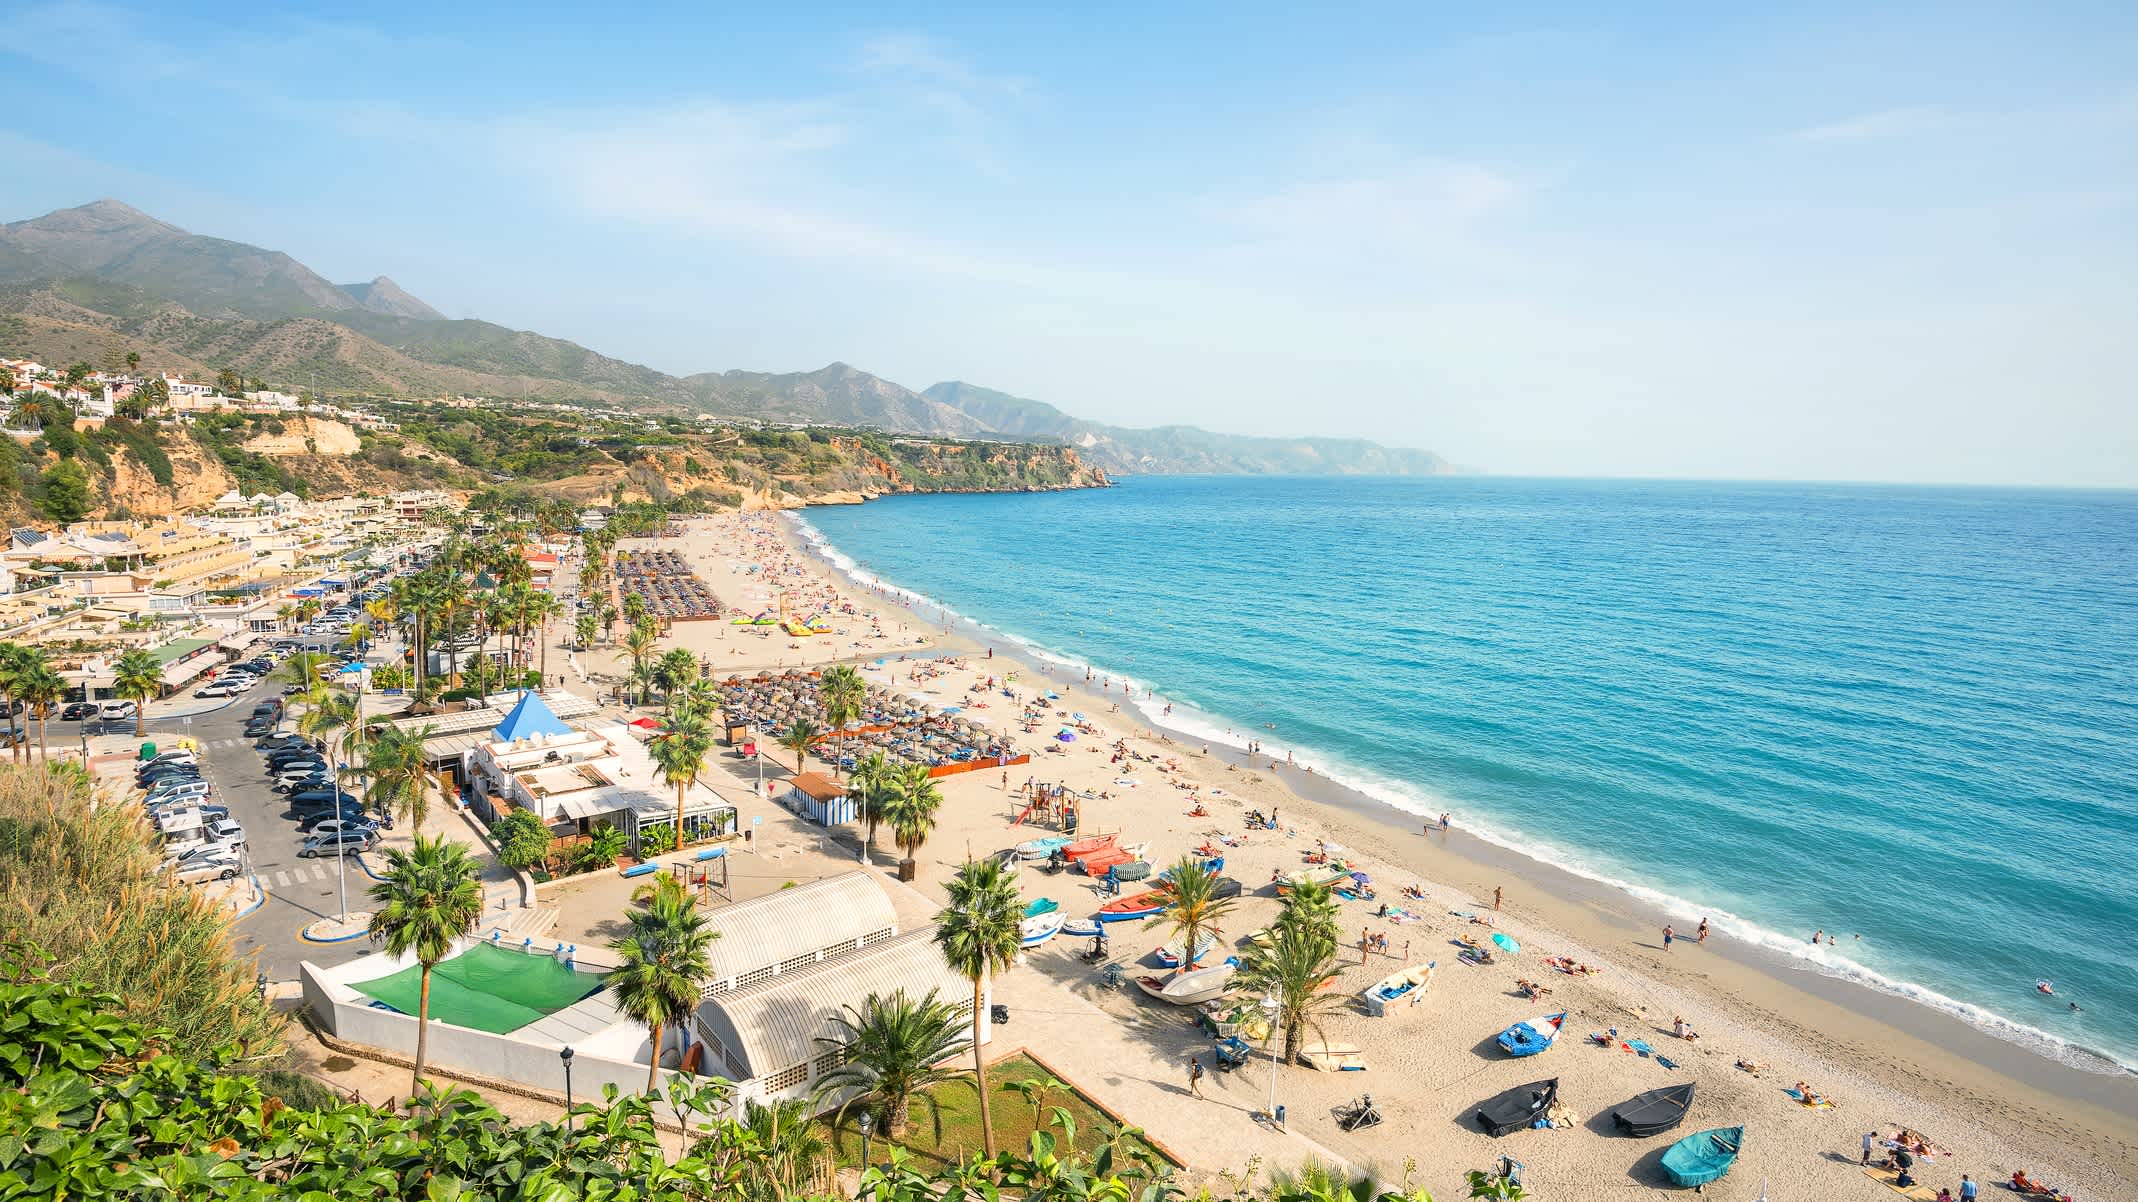 Blick auf den Strand in Nerja, Costa del Sol, Andalusien, Spanien

